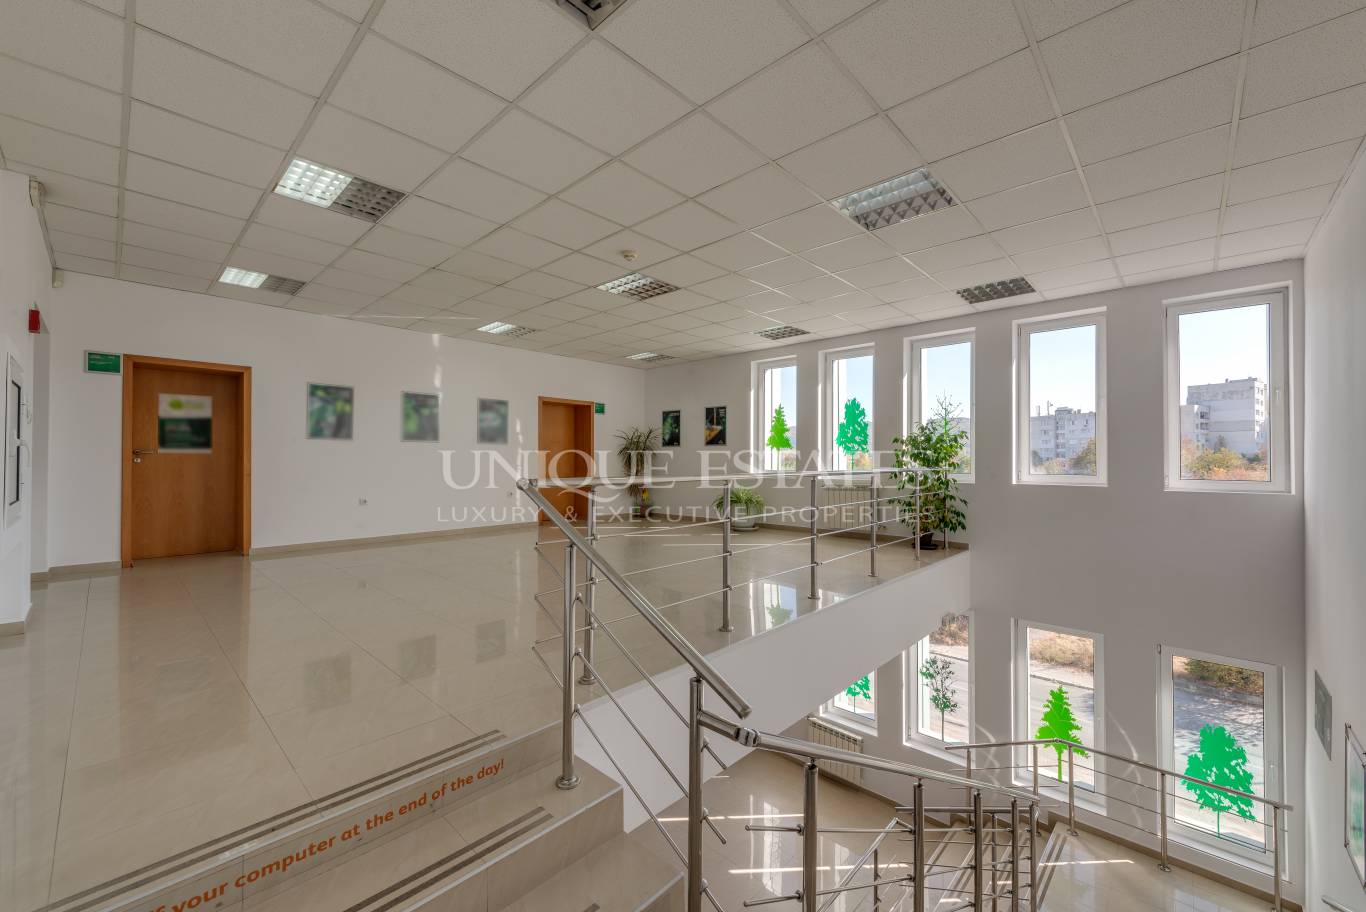 Офис сграда / Сграда за продажба в София, Младост - код на имота: K10134 - image 4